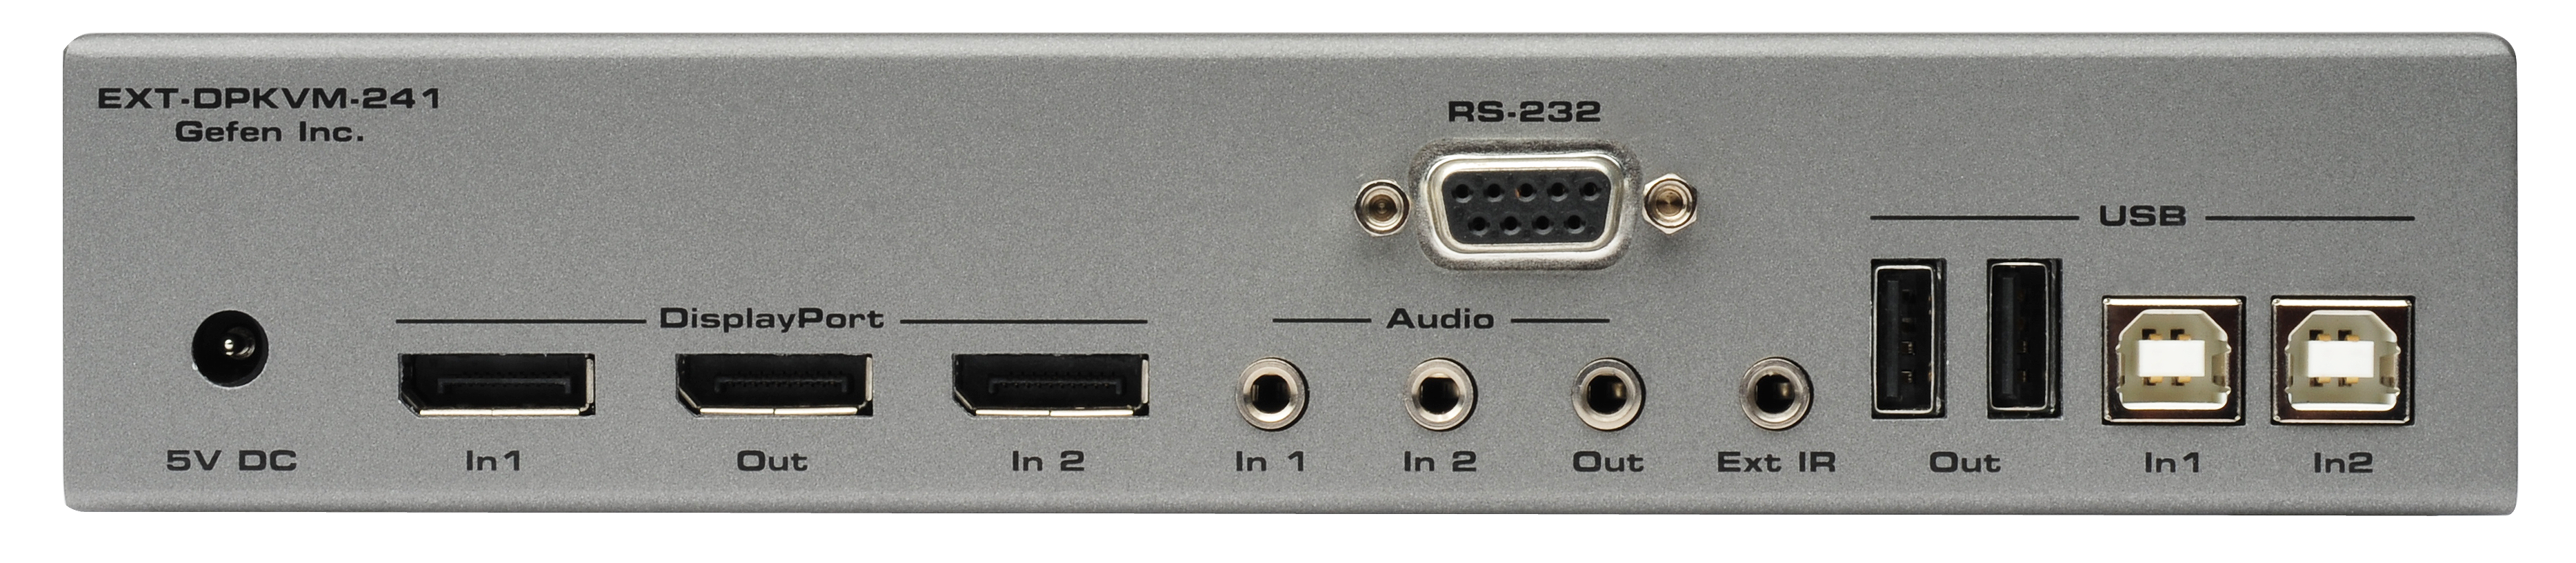 2x1 DisplayPort KVM Switcher | Gefen